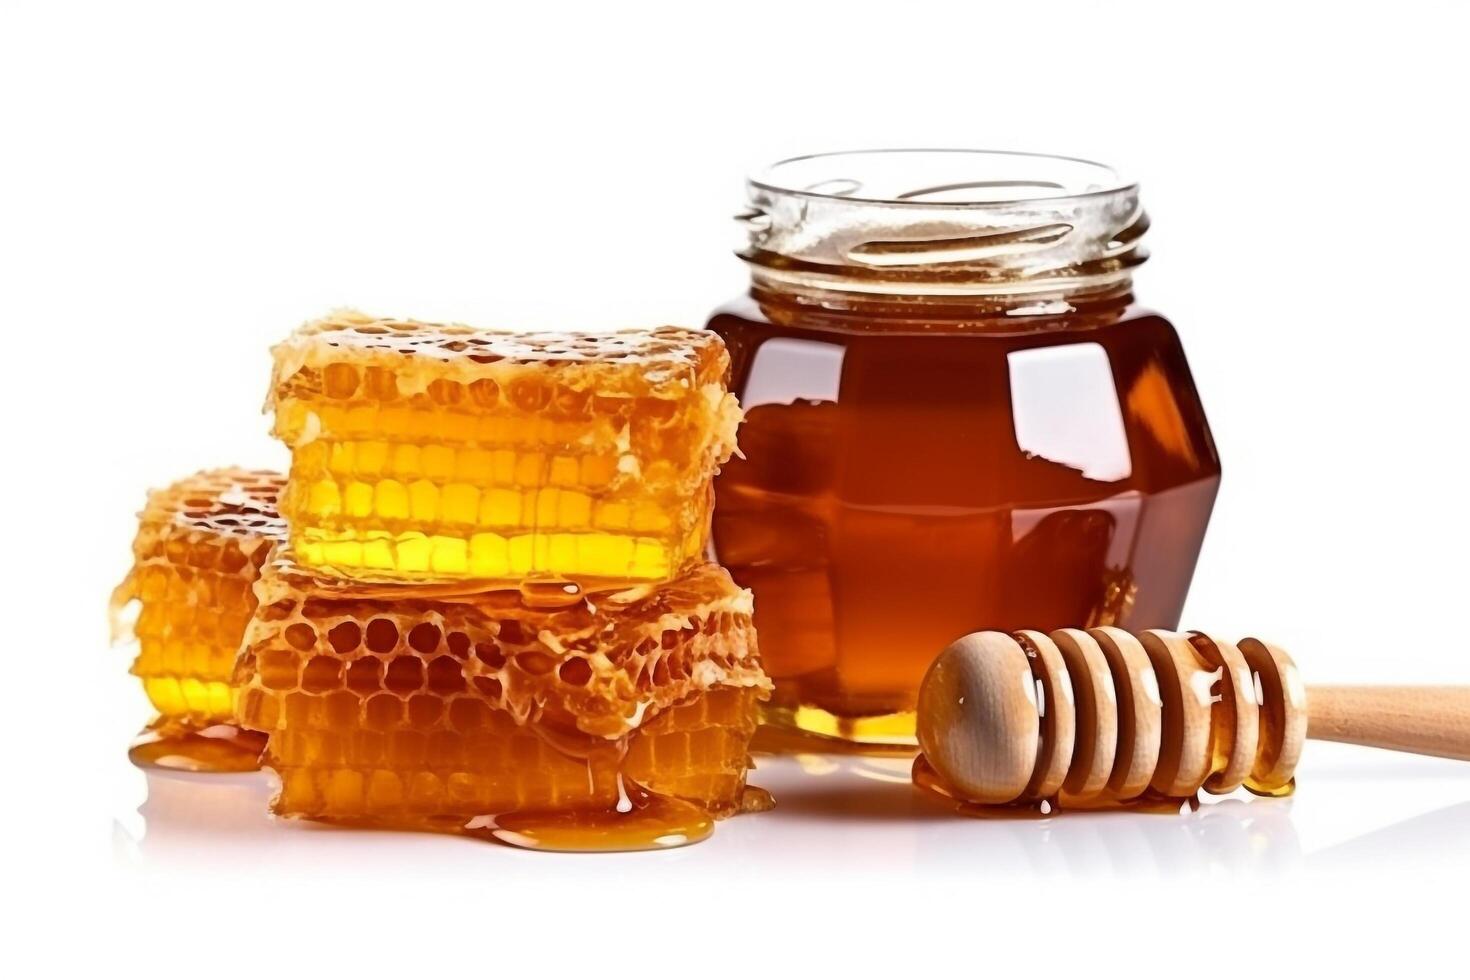 Honey with honeycomb isolated on white background.. photo